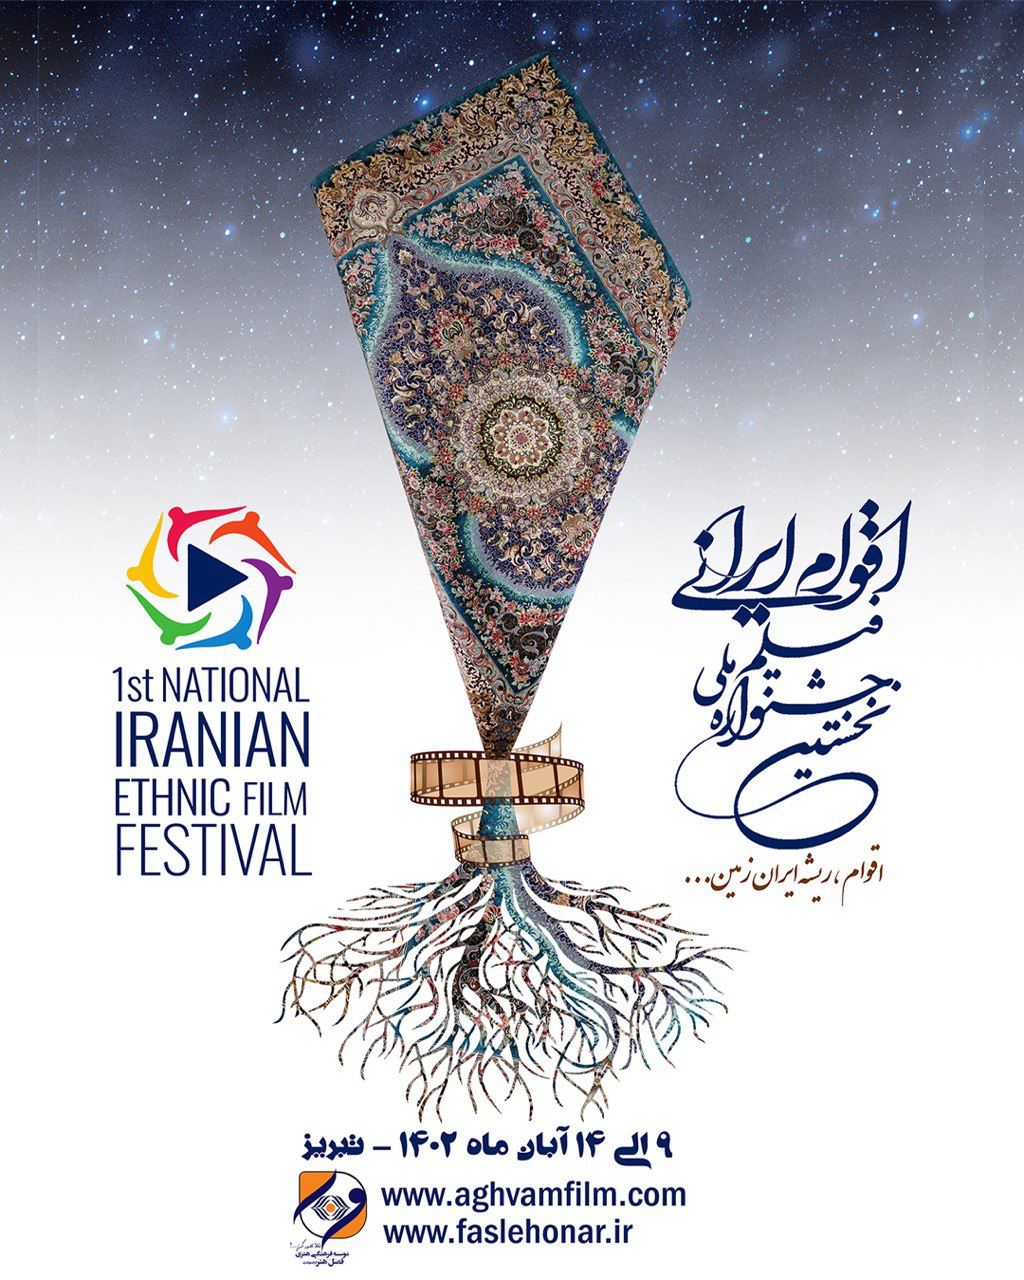 تجلی همبستگی ملی در جشنواره ” فیلم اقوام ایرانی”